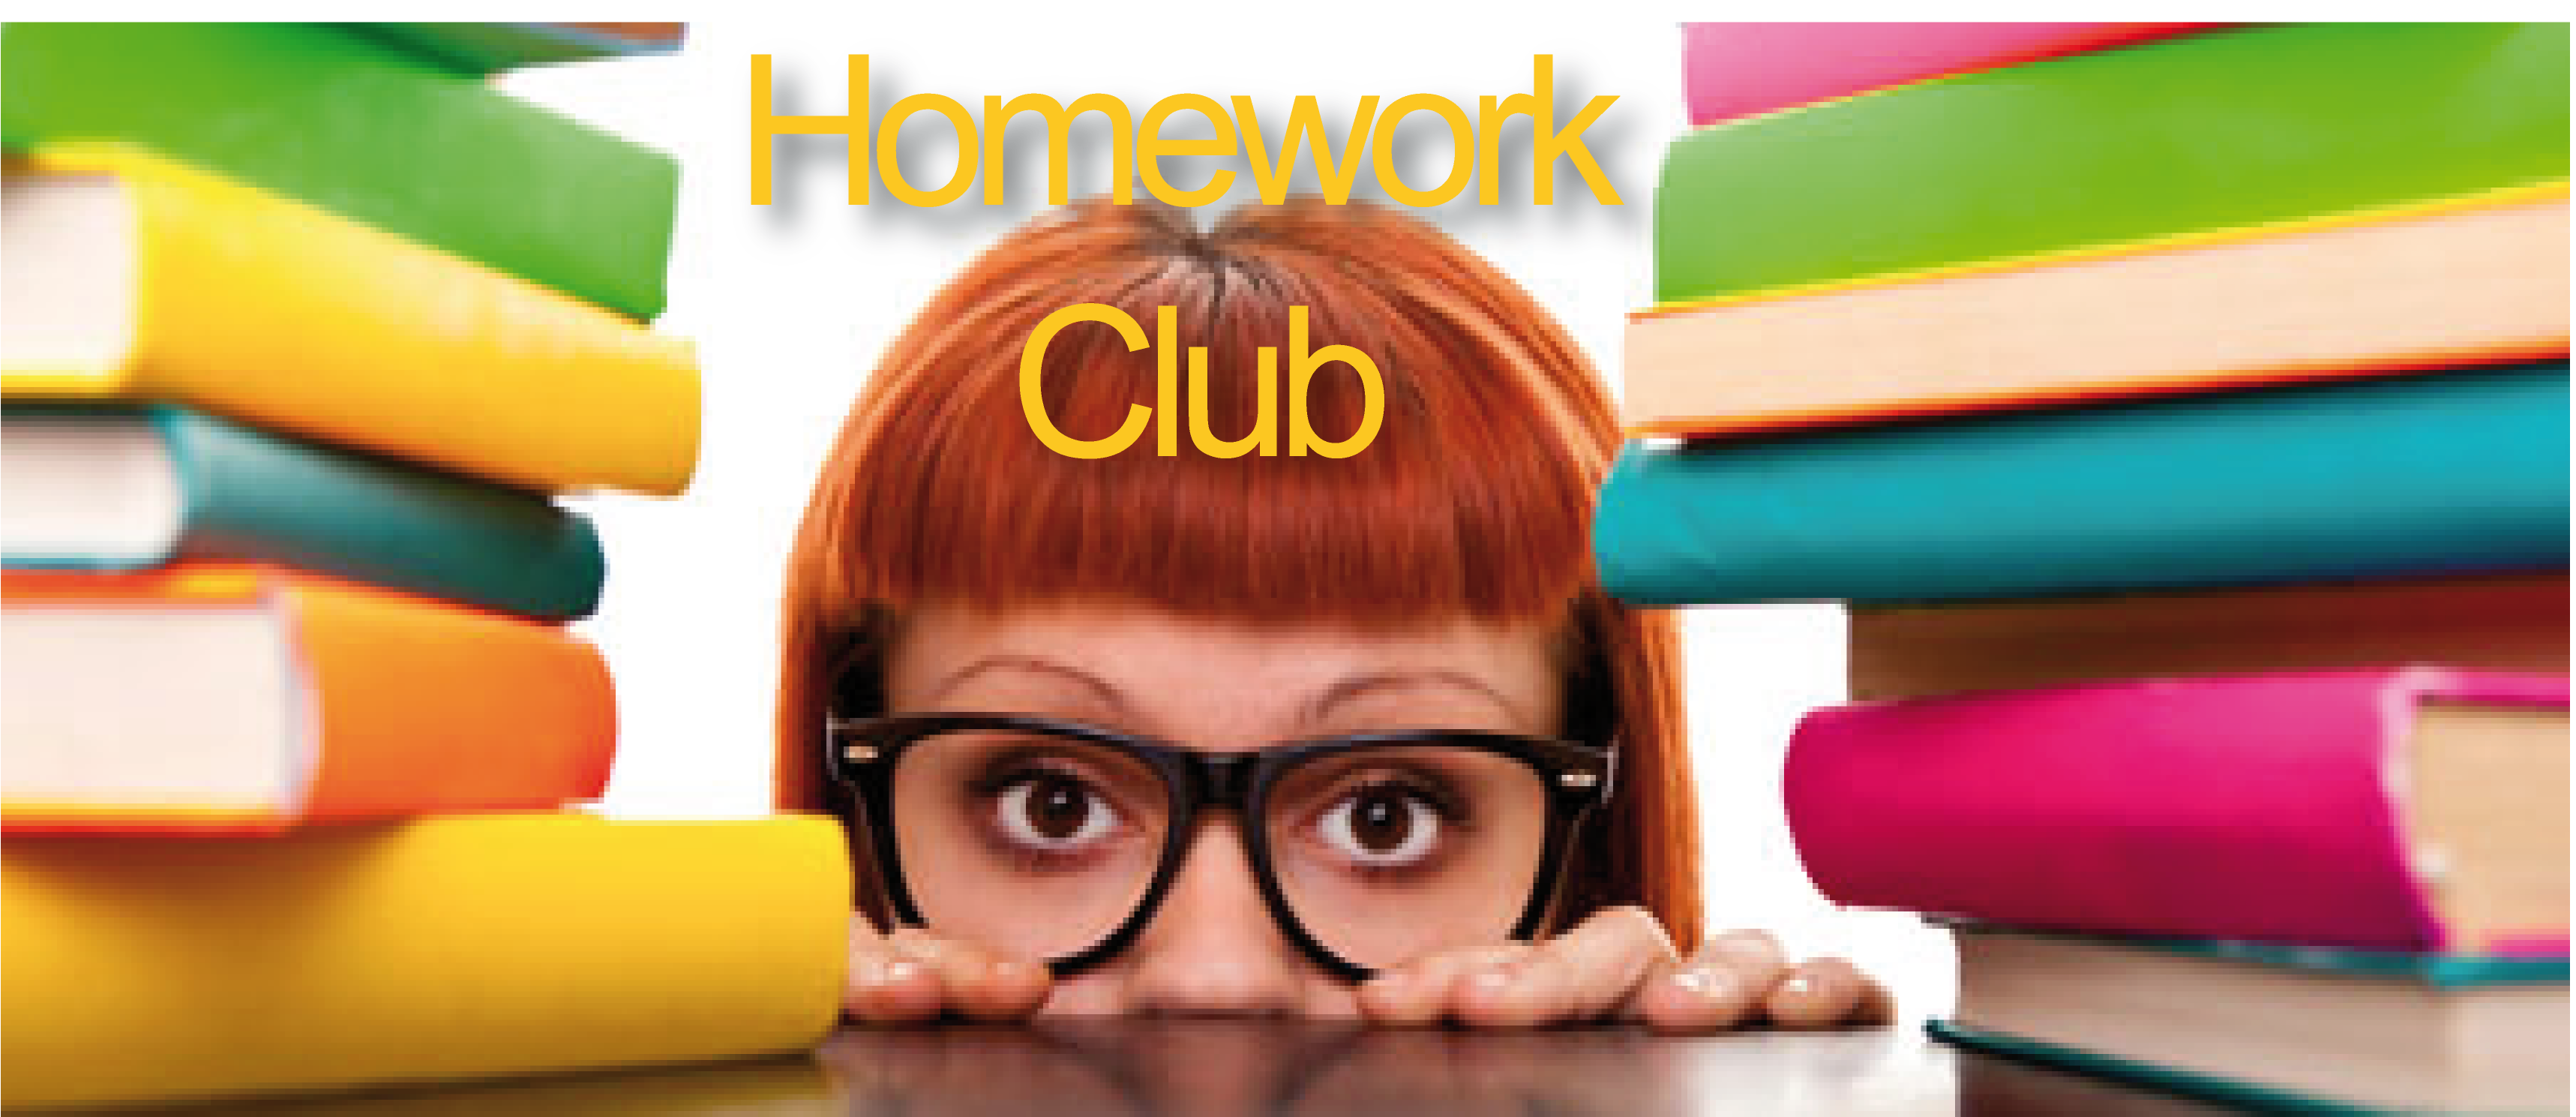 homework club activities